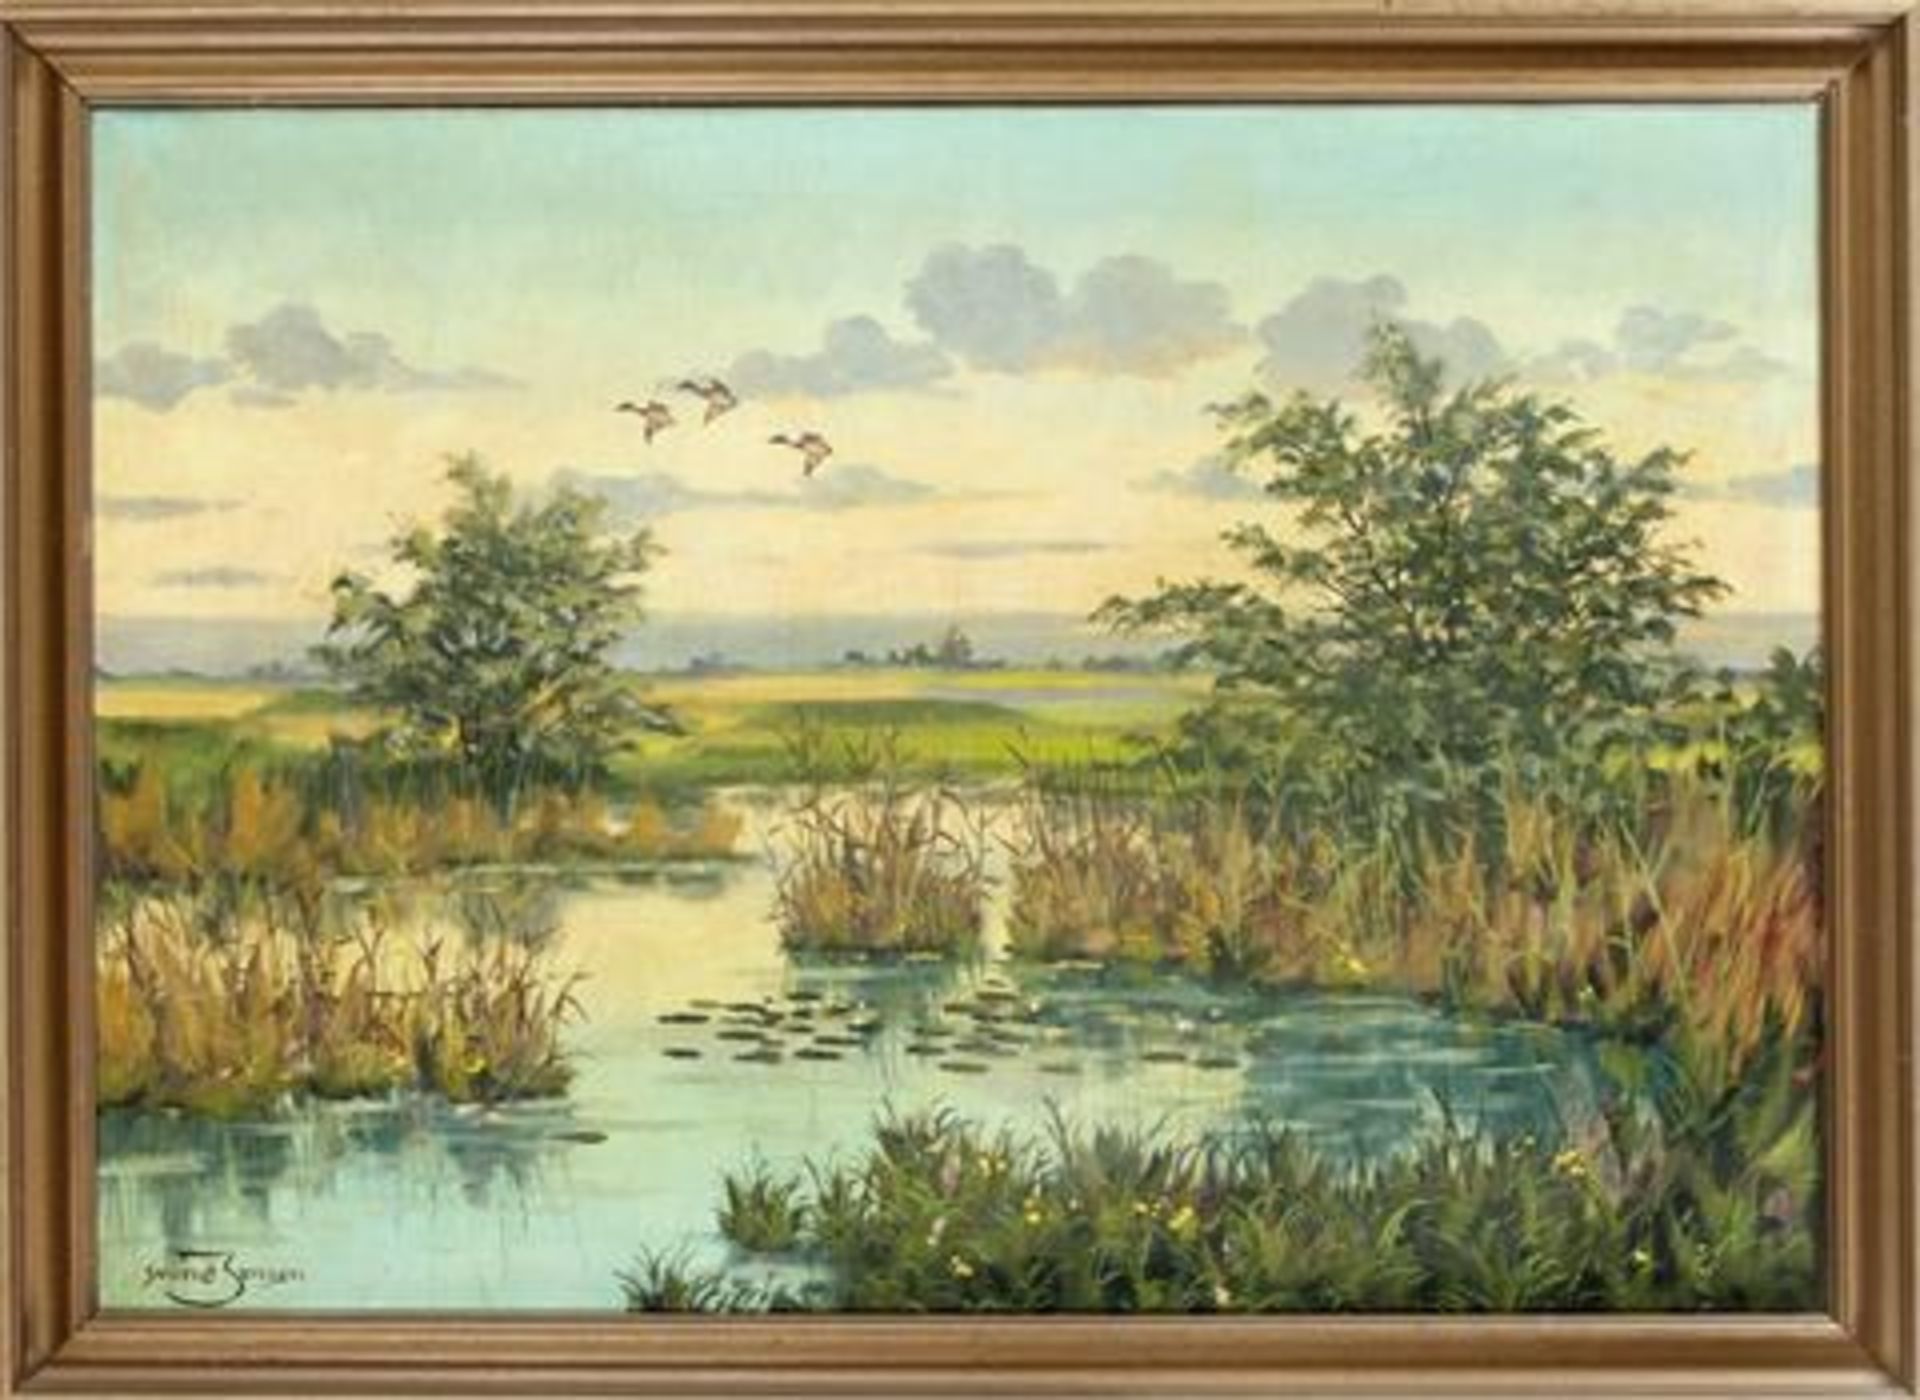 Kim S. Jensen (1947-2000). Landschaft mit auffliegenden Enten, Öl auf Lwd., u. li. sign.,47 x 67 cm,